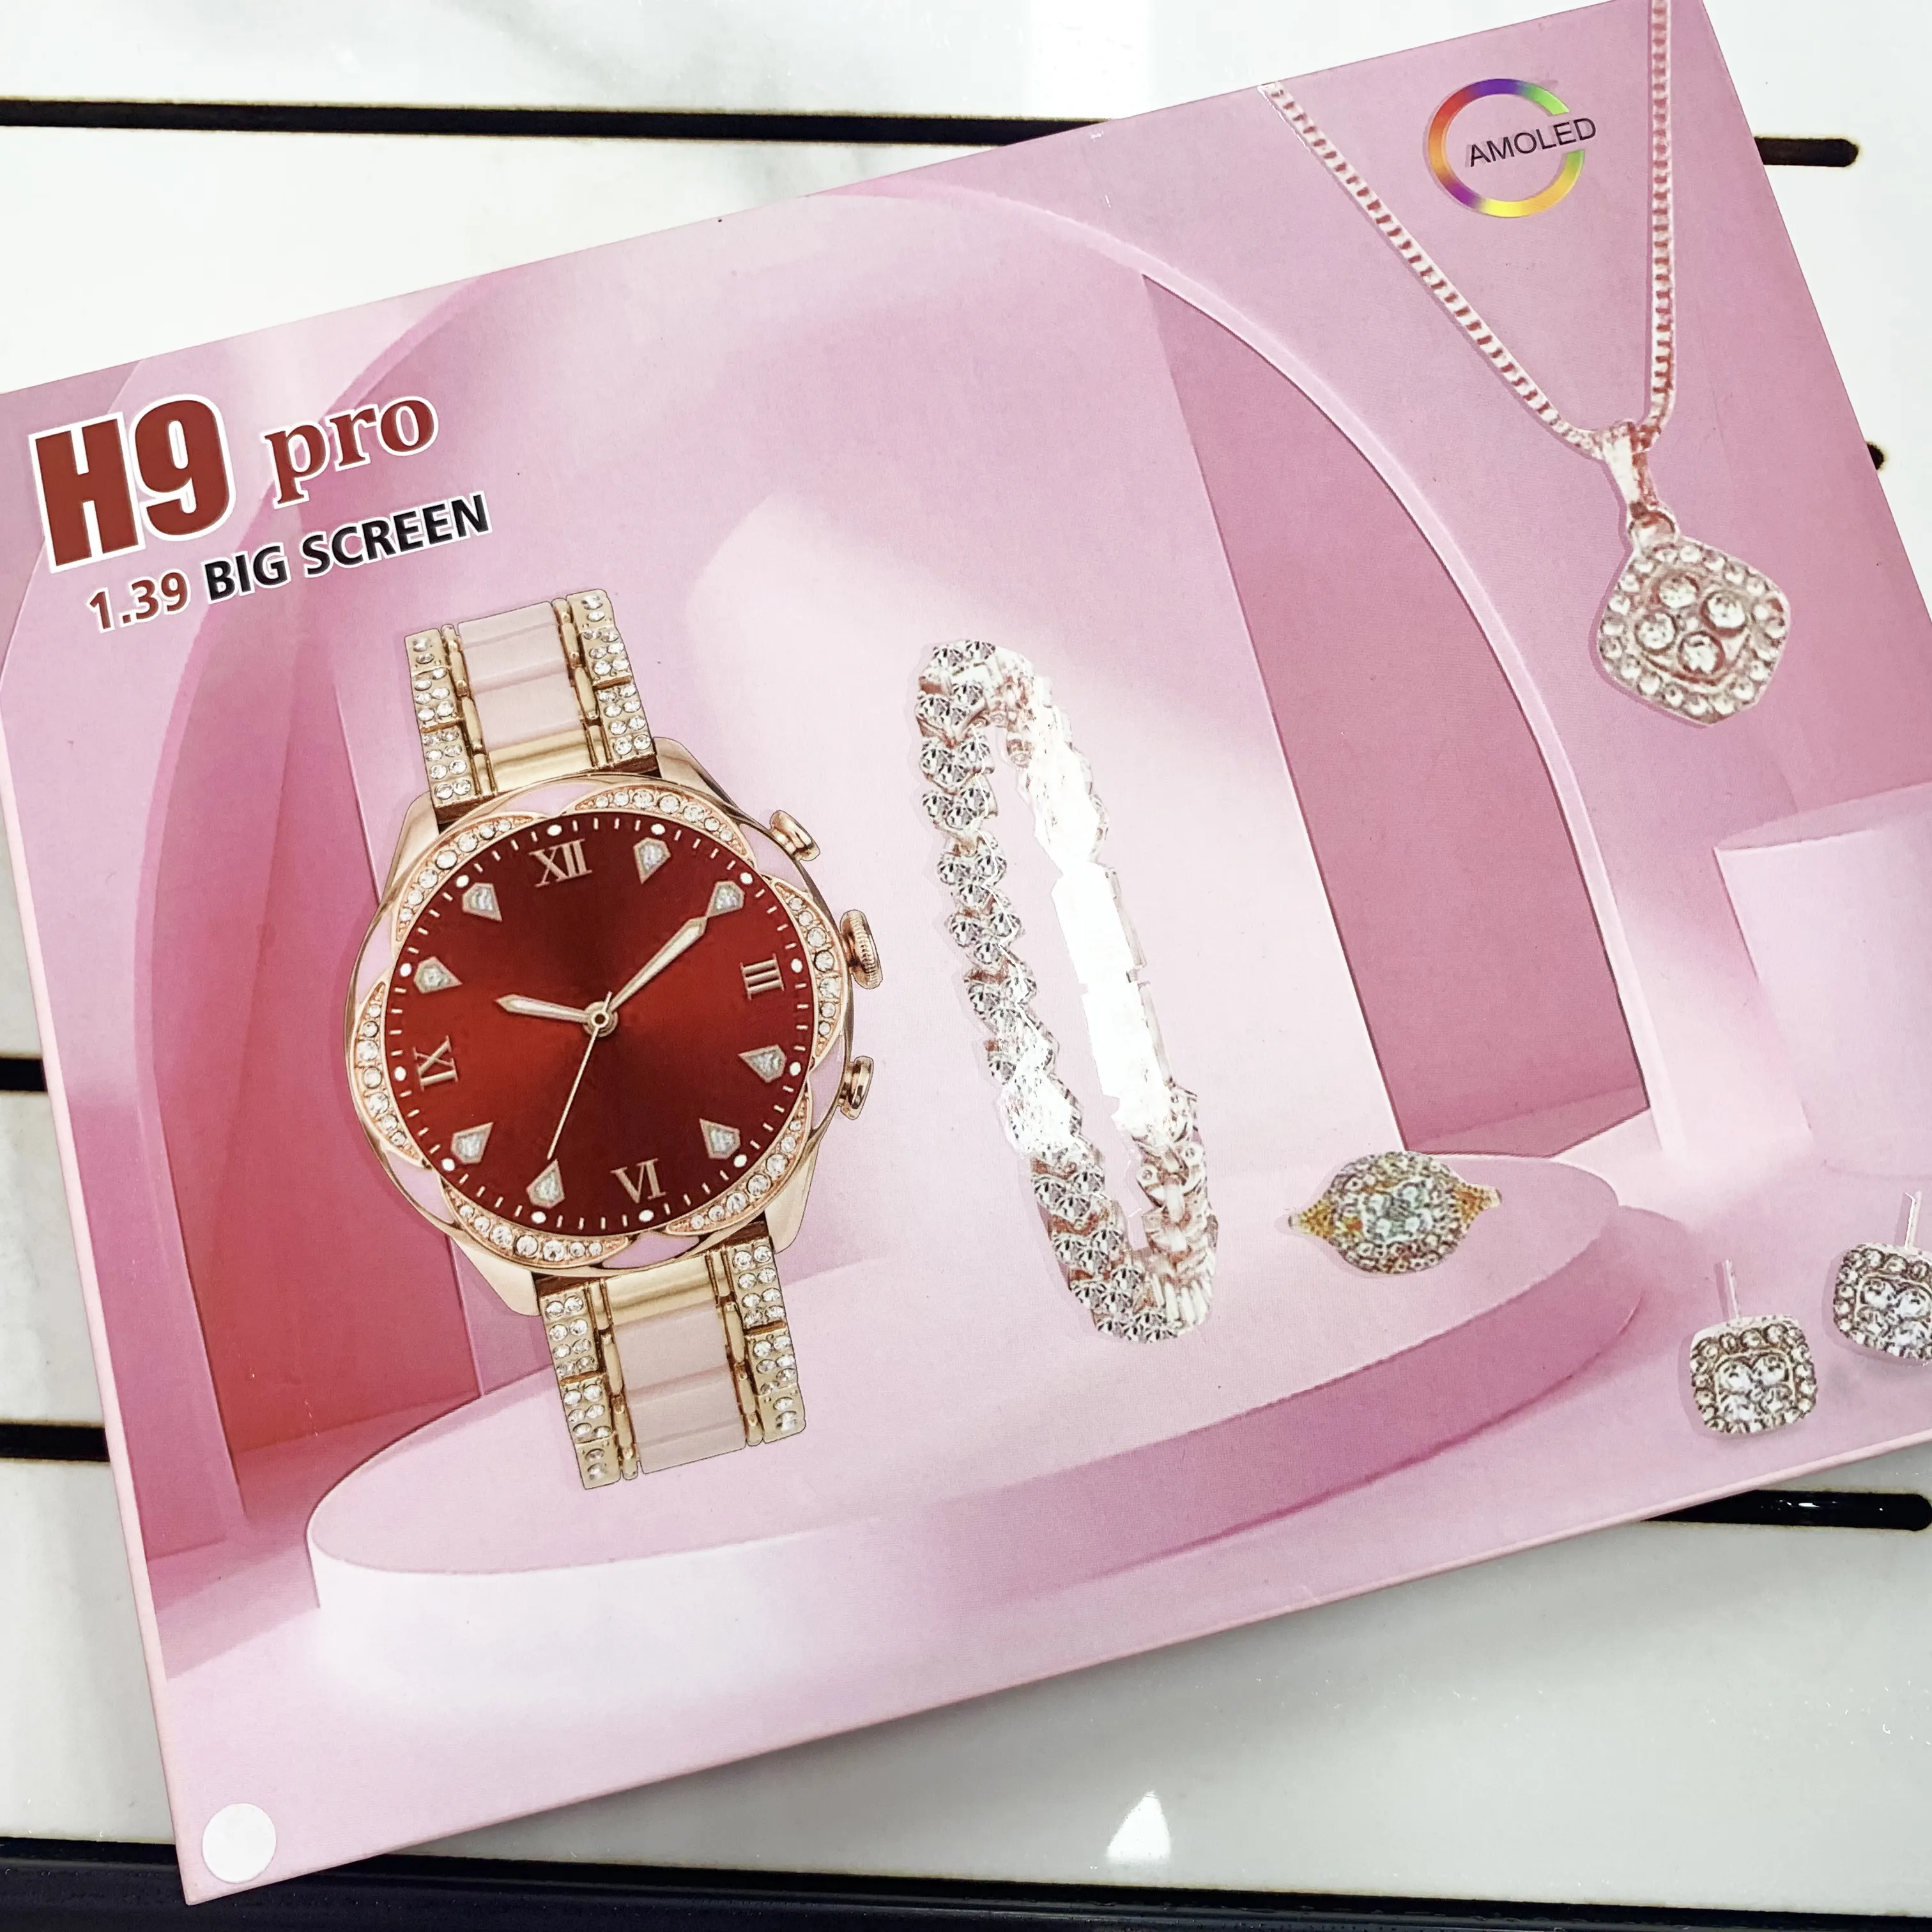 นาฬิกาอัจฉริยะ H9pro ใหม่1.39 AMOLED H9 Pro นาฬิกาอัจฉริยะนาฬิกาเซอรี่ผู้หญิงกันน้ำนาฬิกาข้อมืออัจฉริยะสุภาพสตรีสุภาพสตรีแฟชั่นเพชร